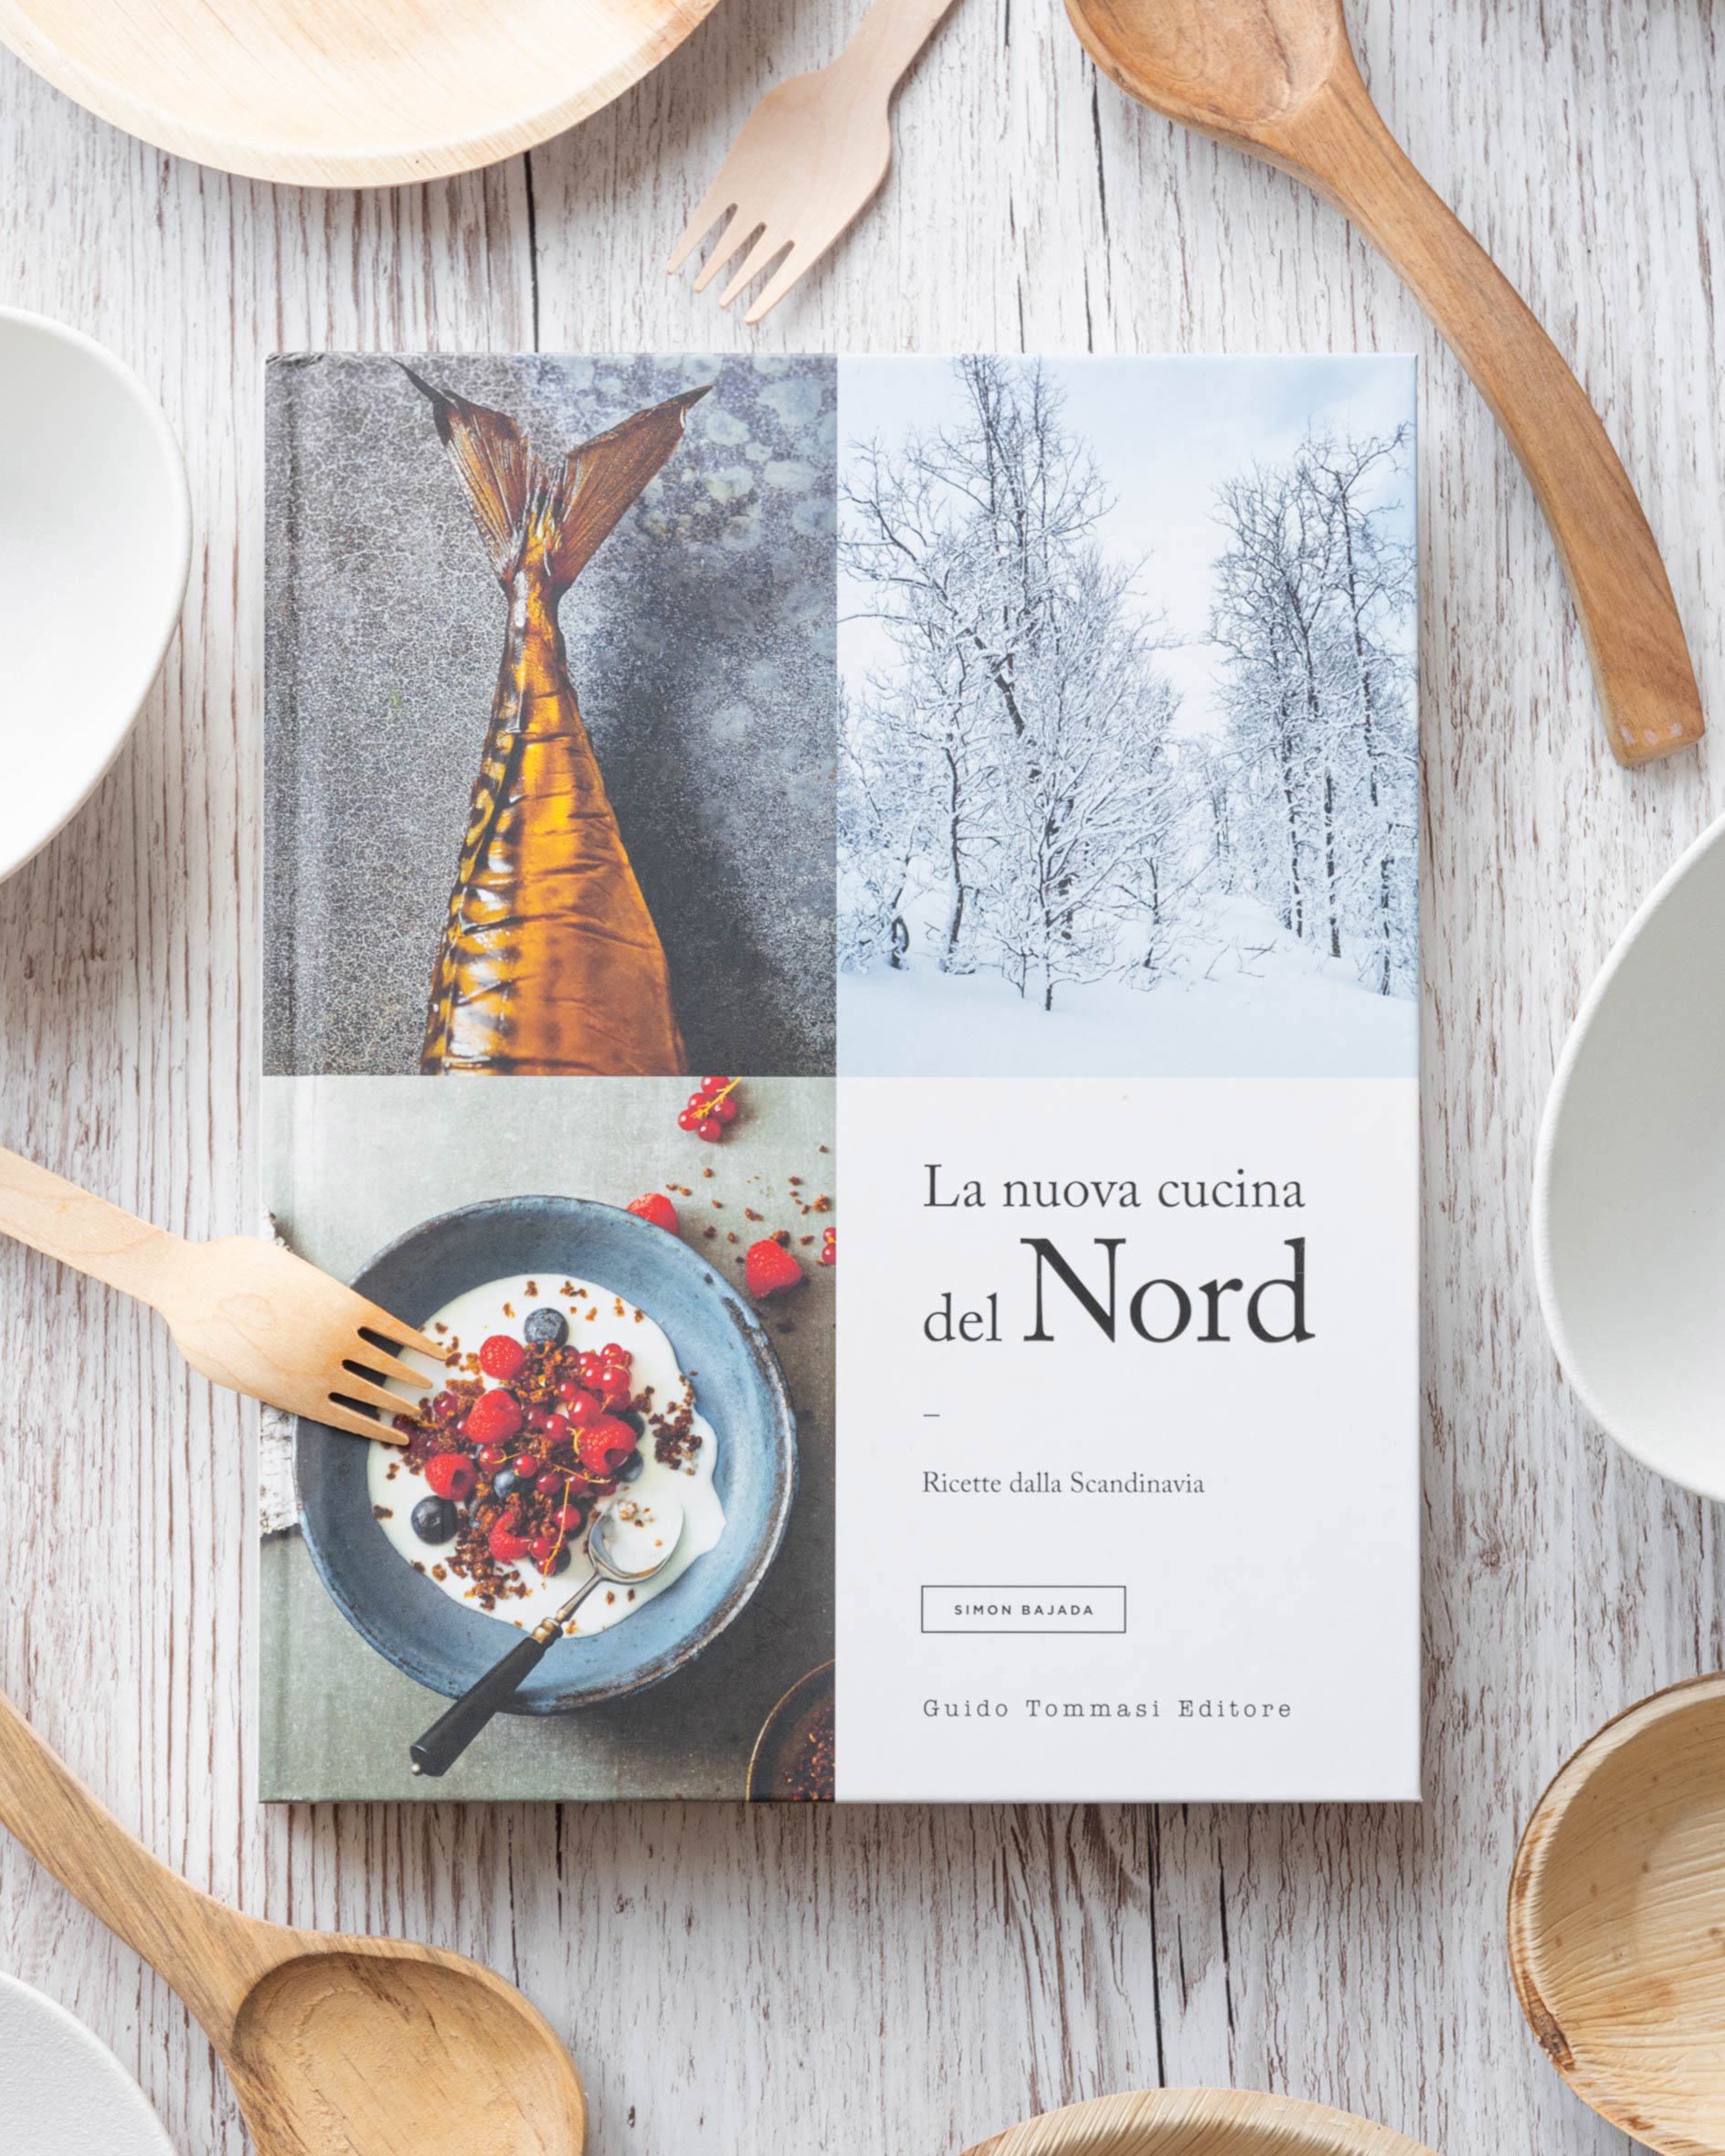 La nuova cucina del nord: ricette dalla Scandinavia